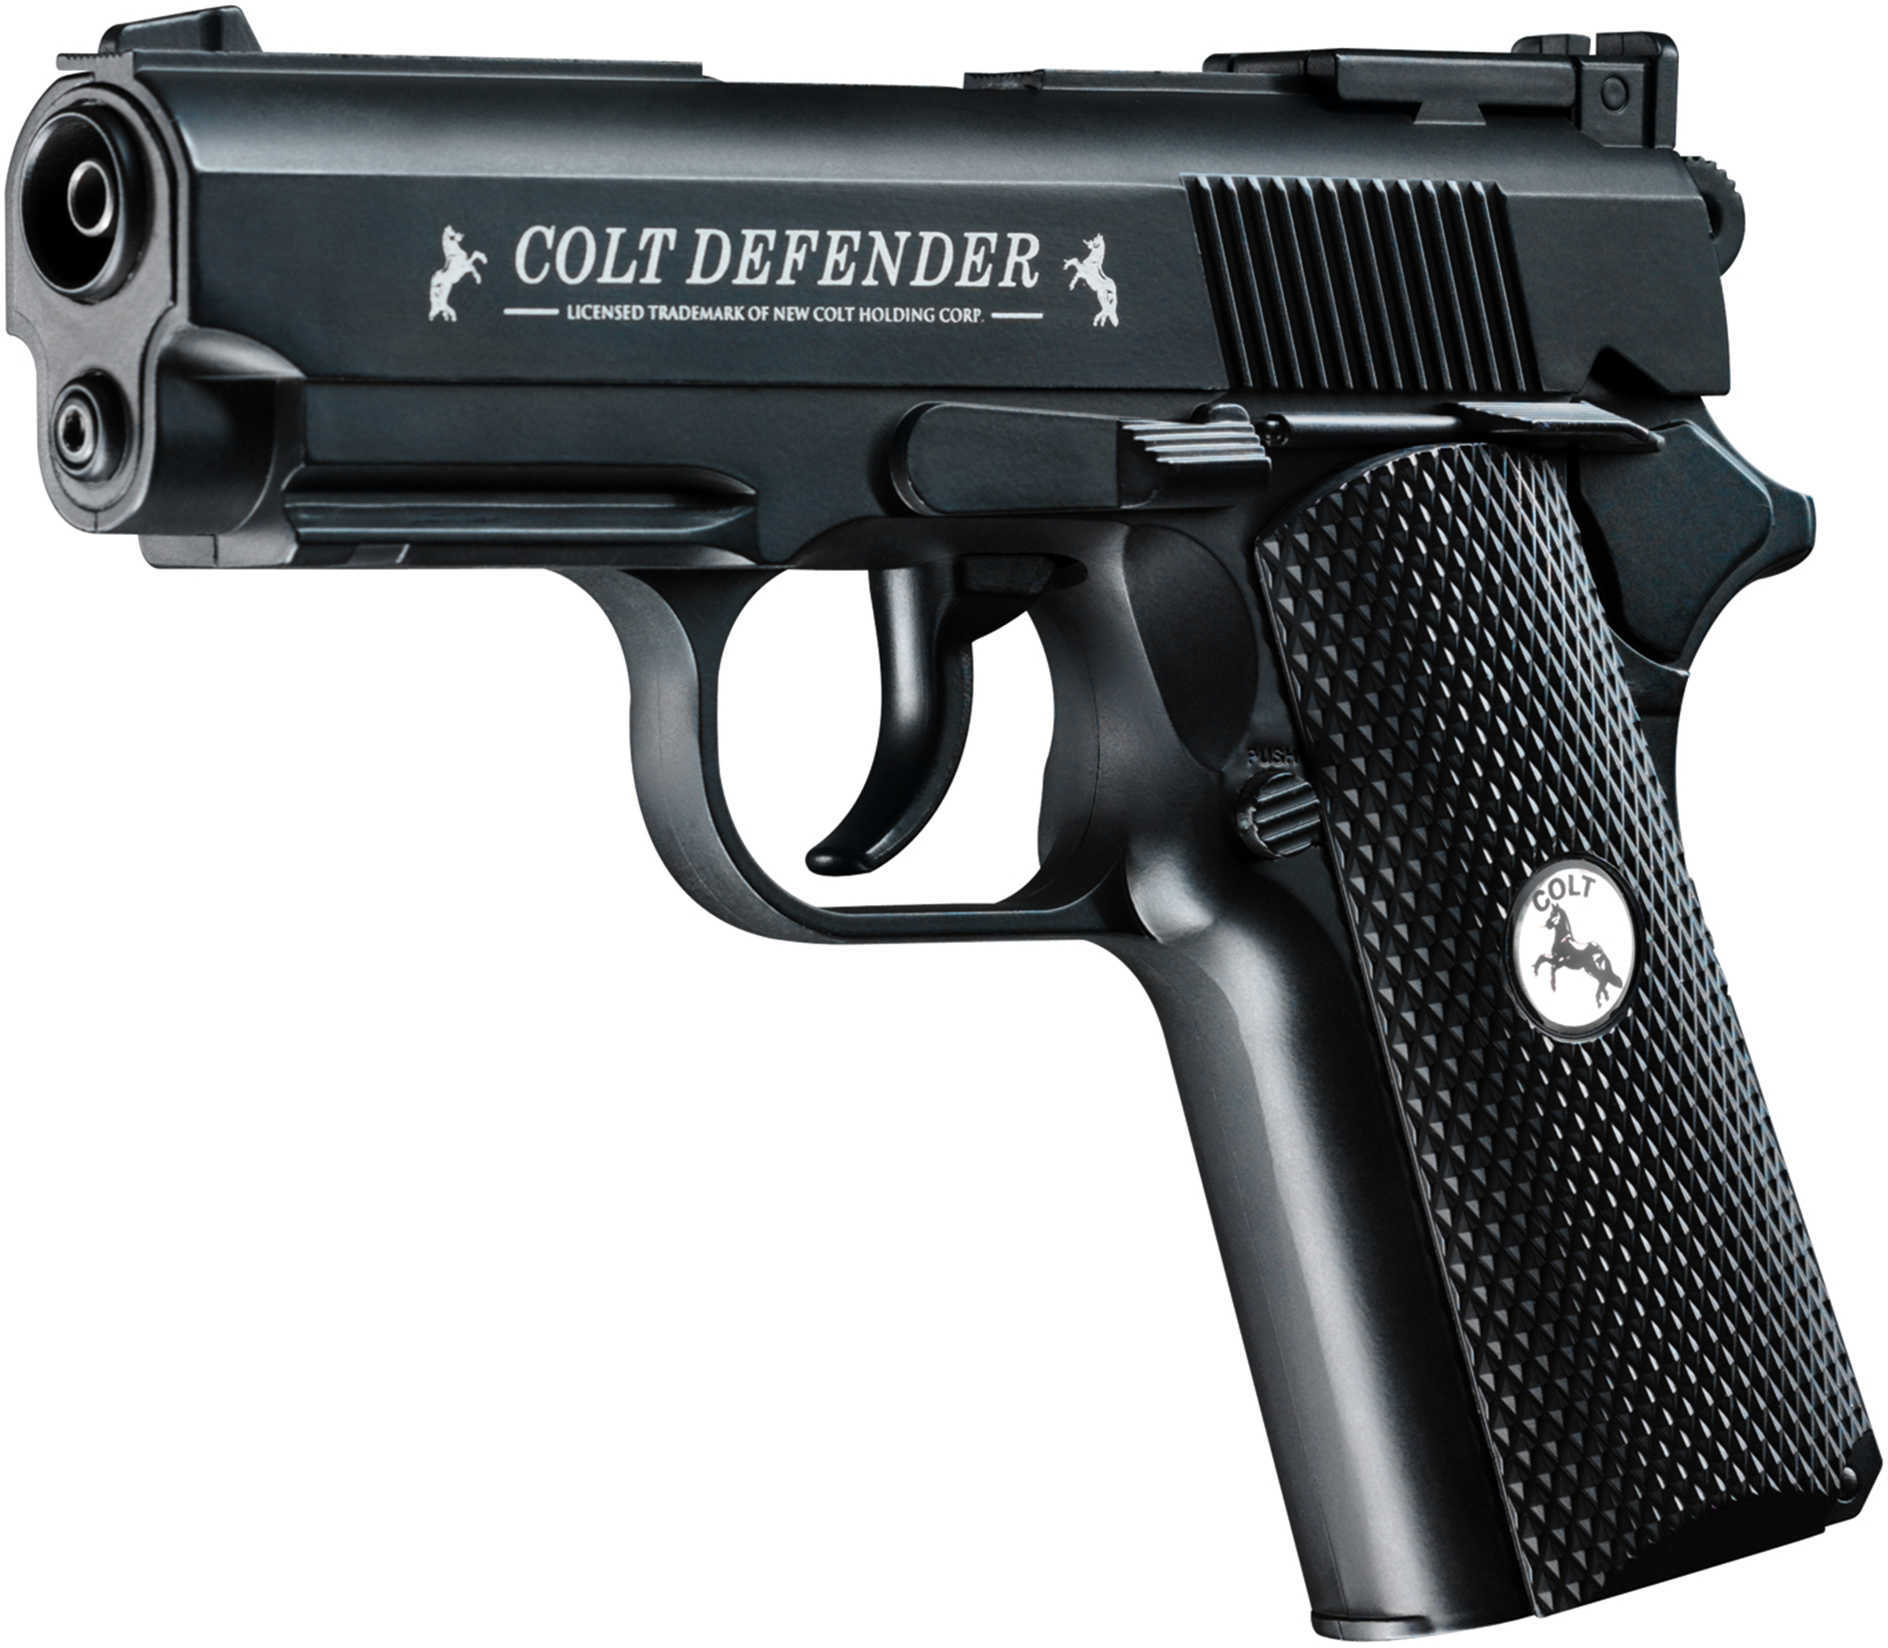 Umarex USA Colt Defender - Black .177 Md: 225-4020